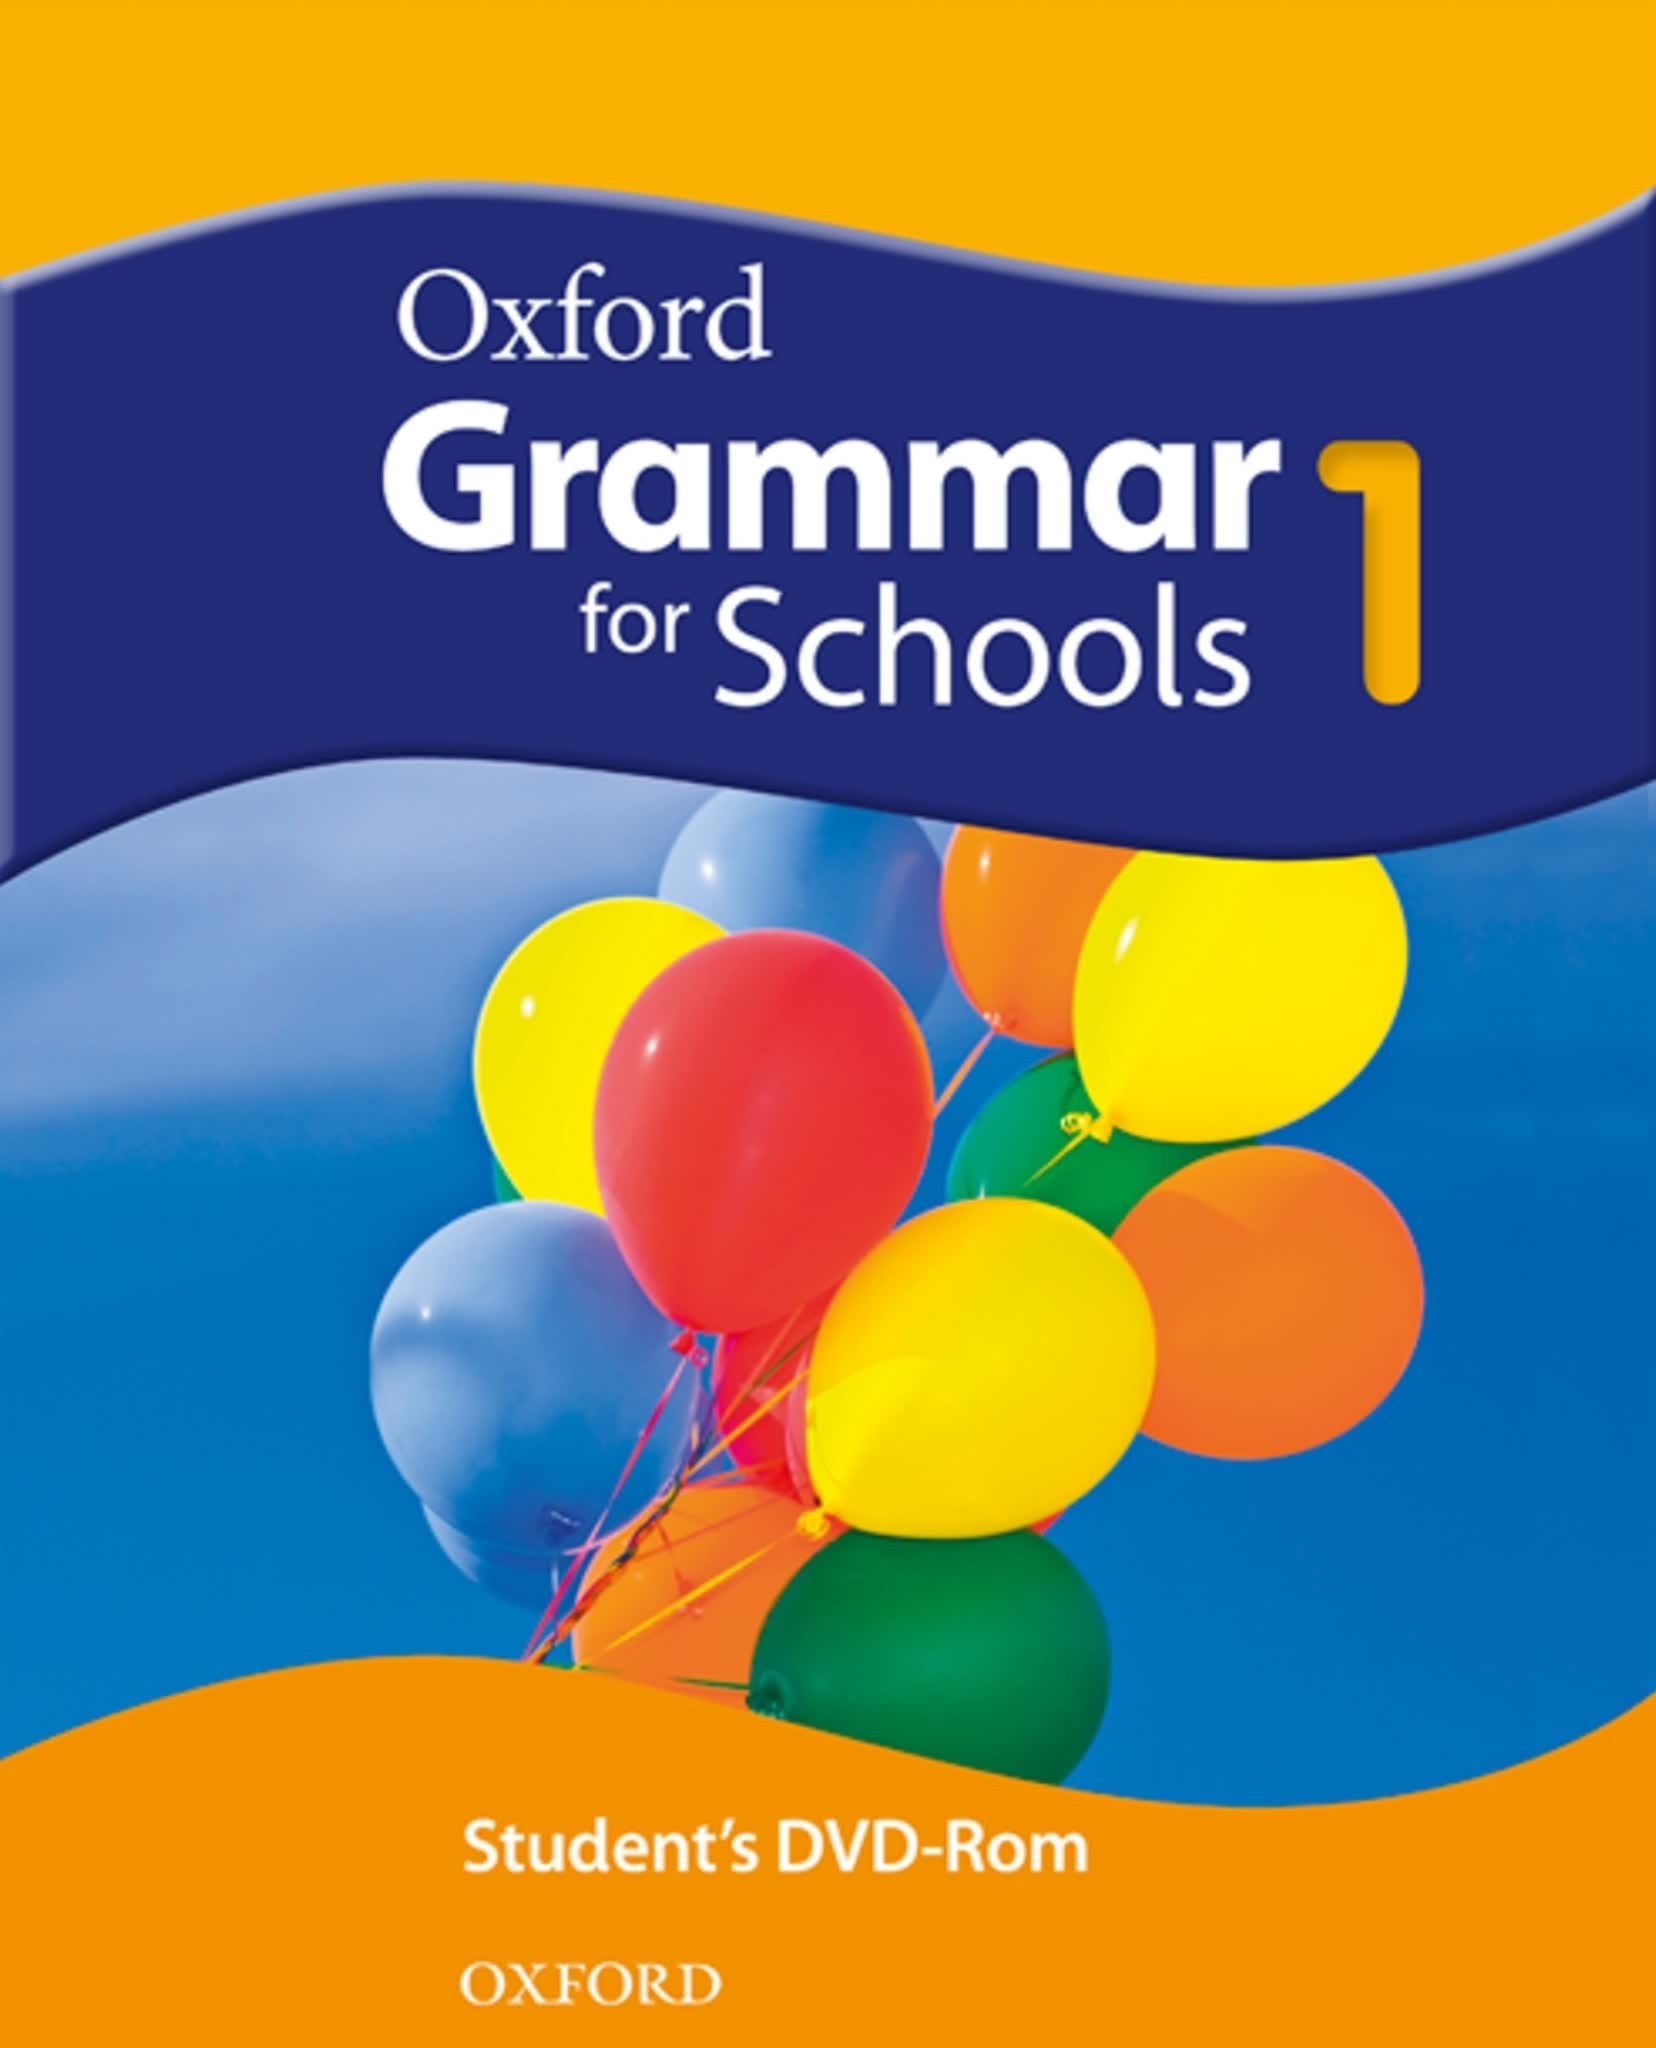 Oxford-Grammar-for-school